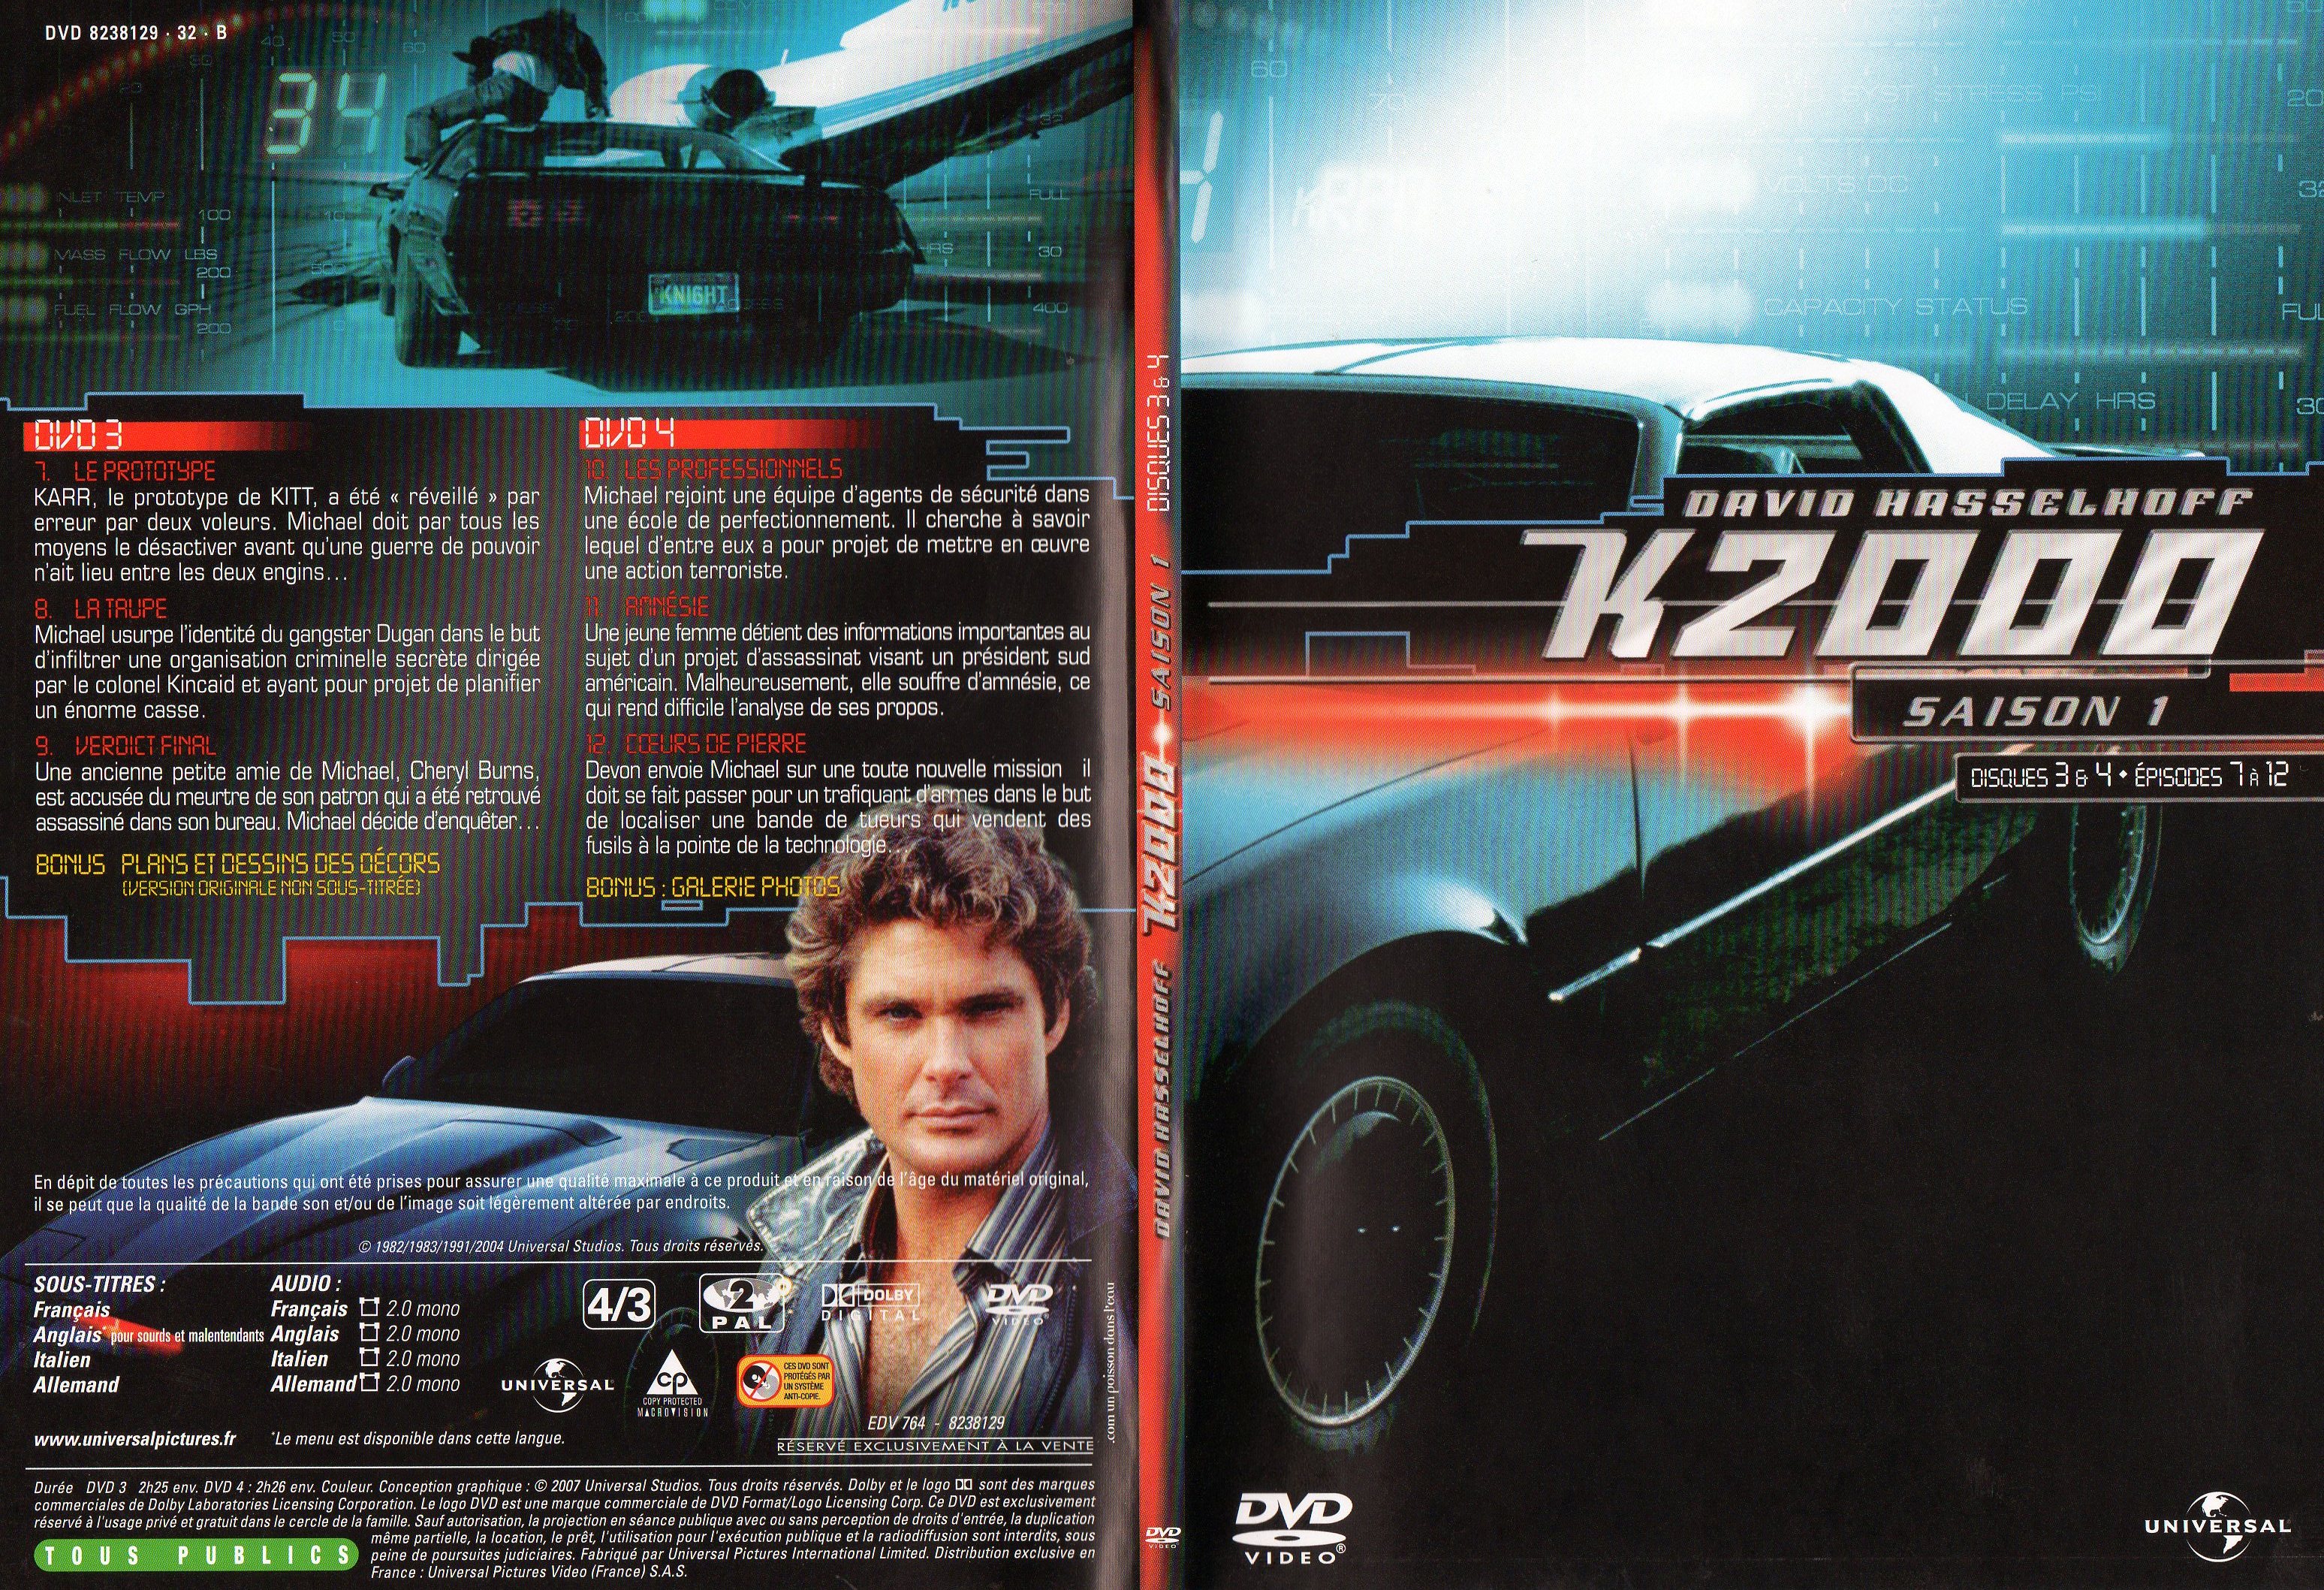 Jaquette DVD K2000 Saison 1 DVD 3 et 4